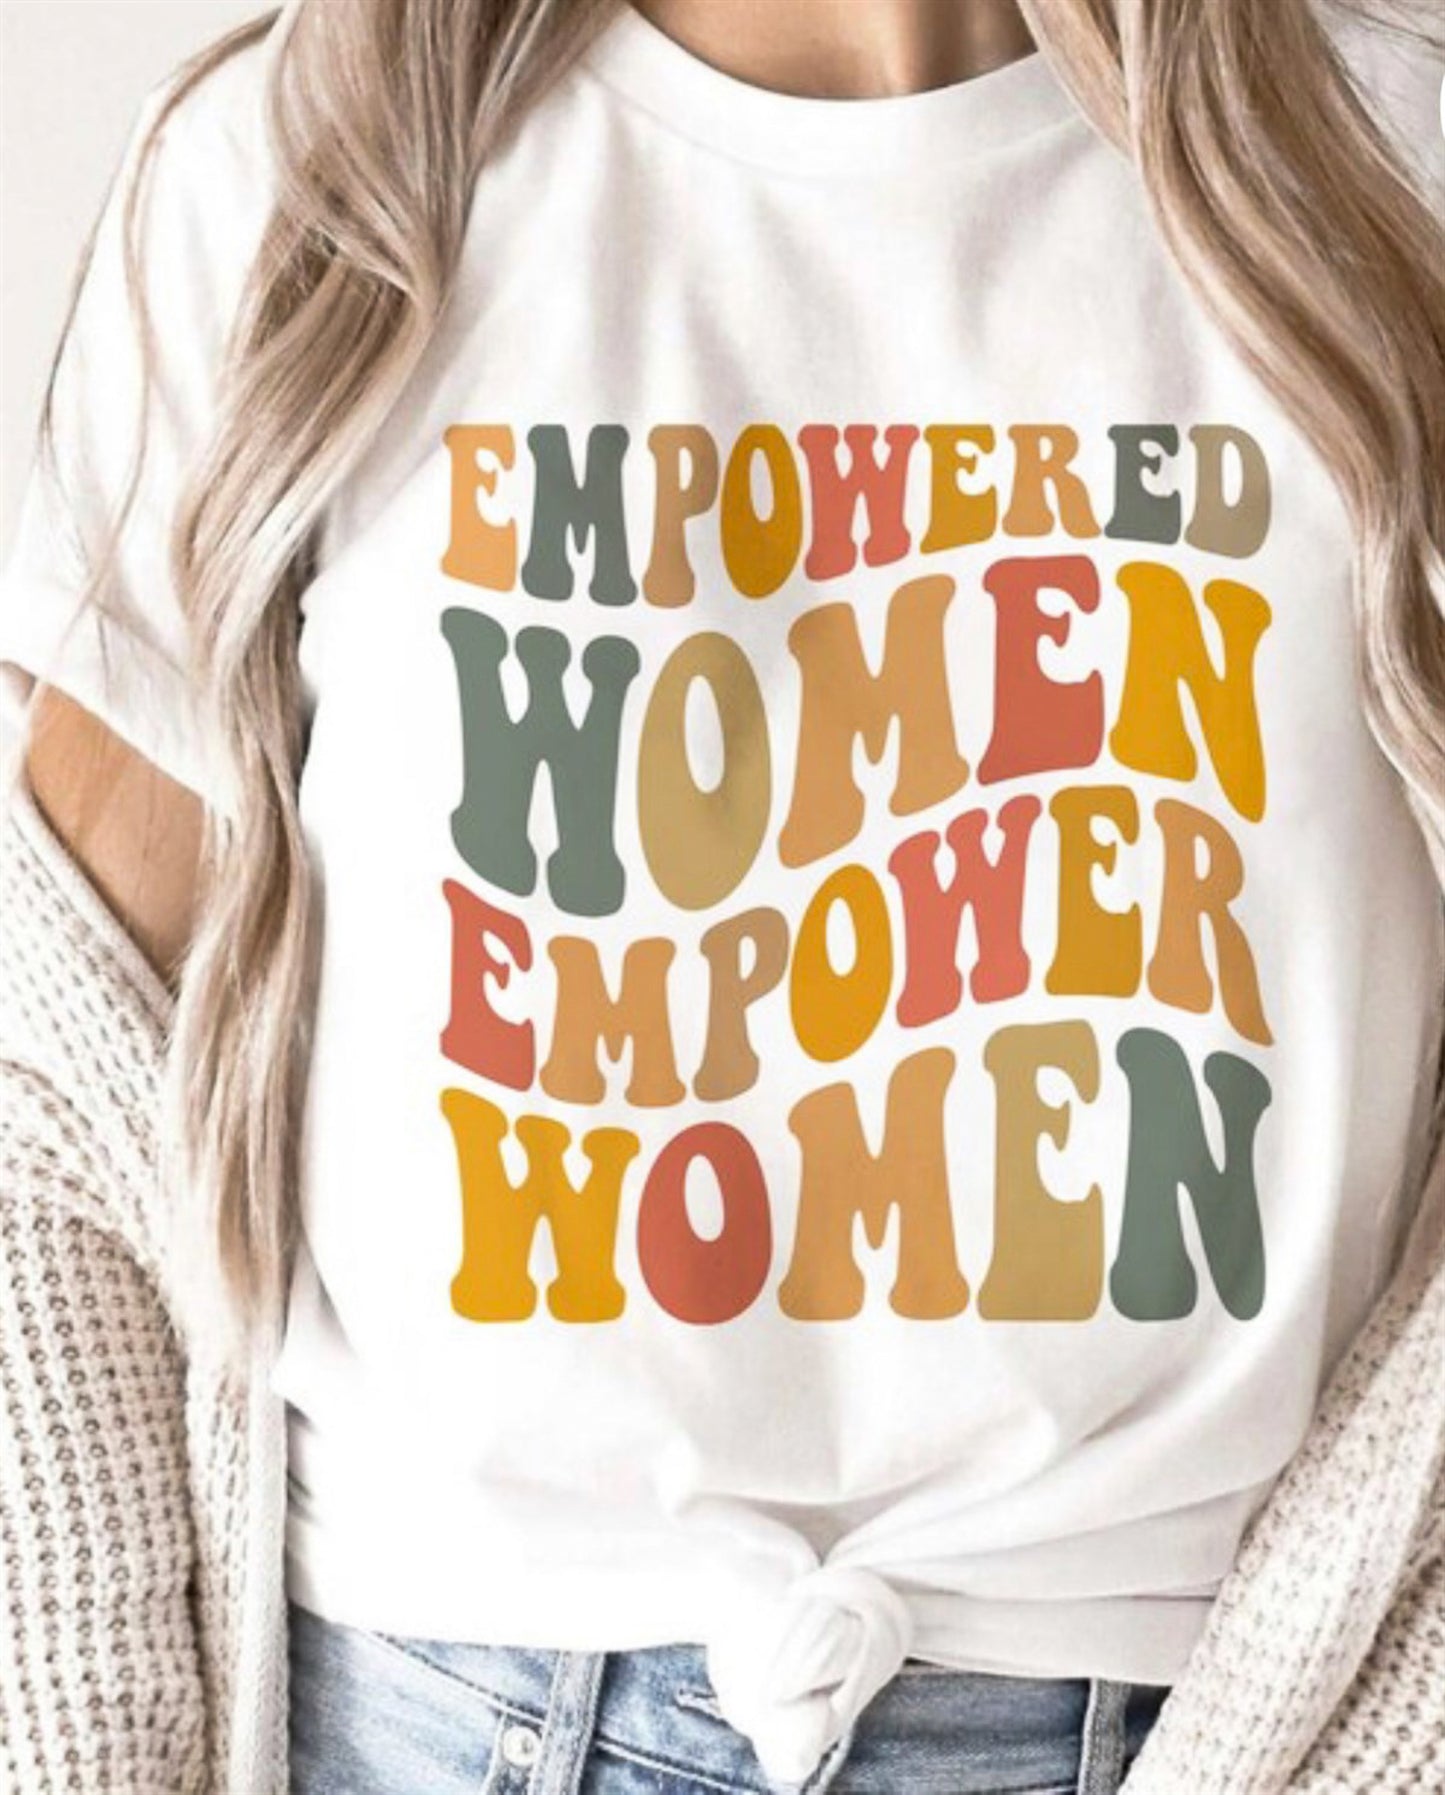 Empowered Women Empower Women Tee